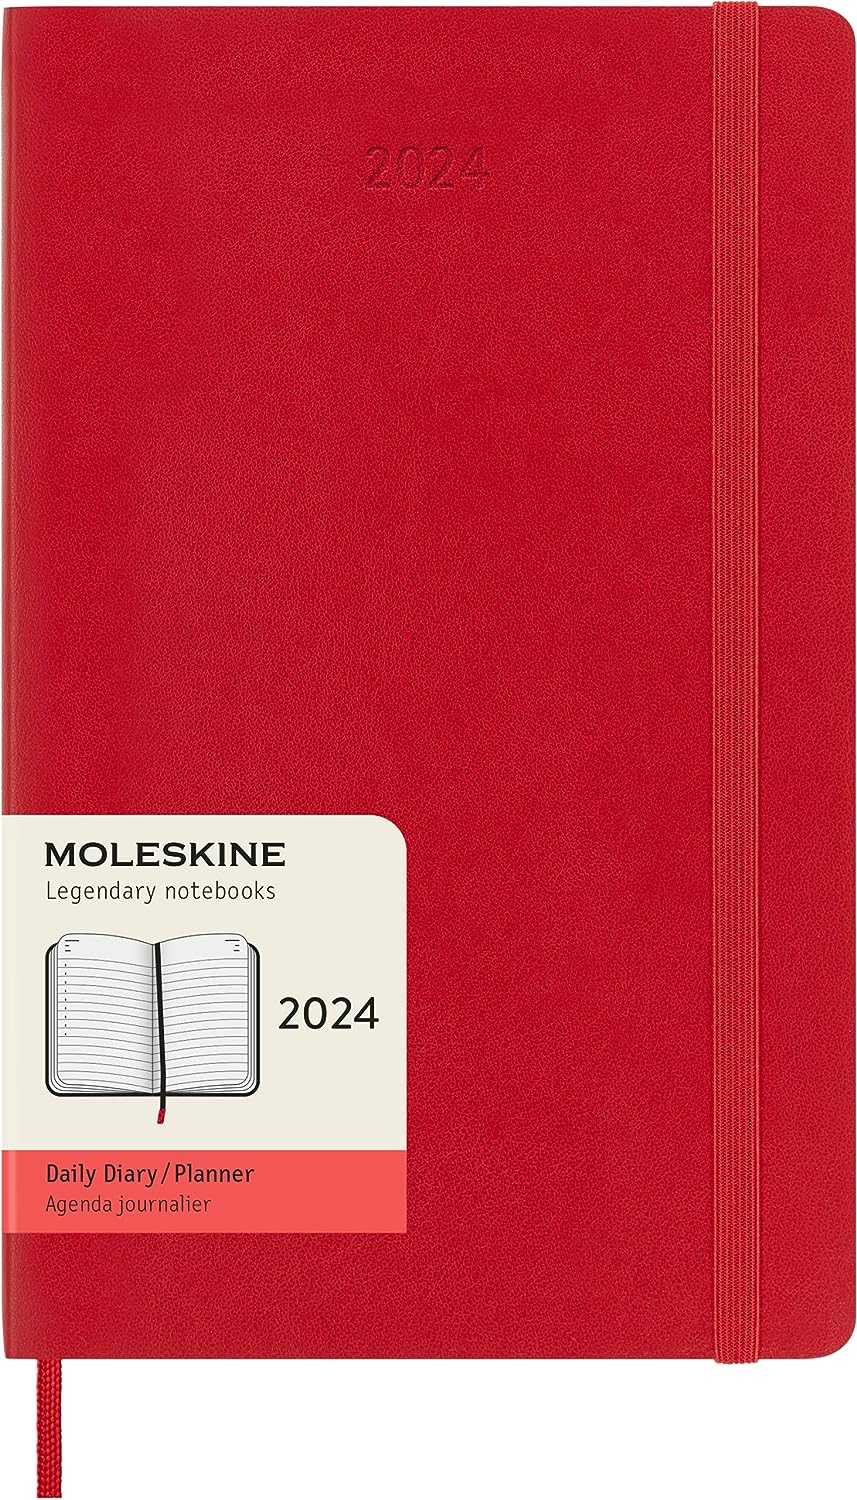 MOLESKINE Agenda journalier 2024 Pocket Soft Cover Red